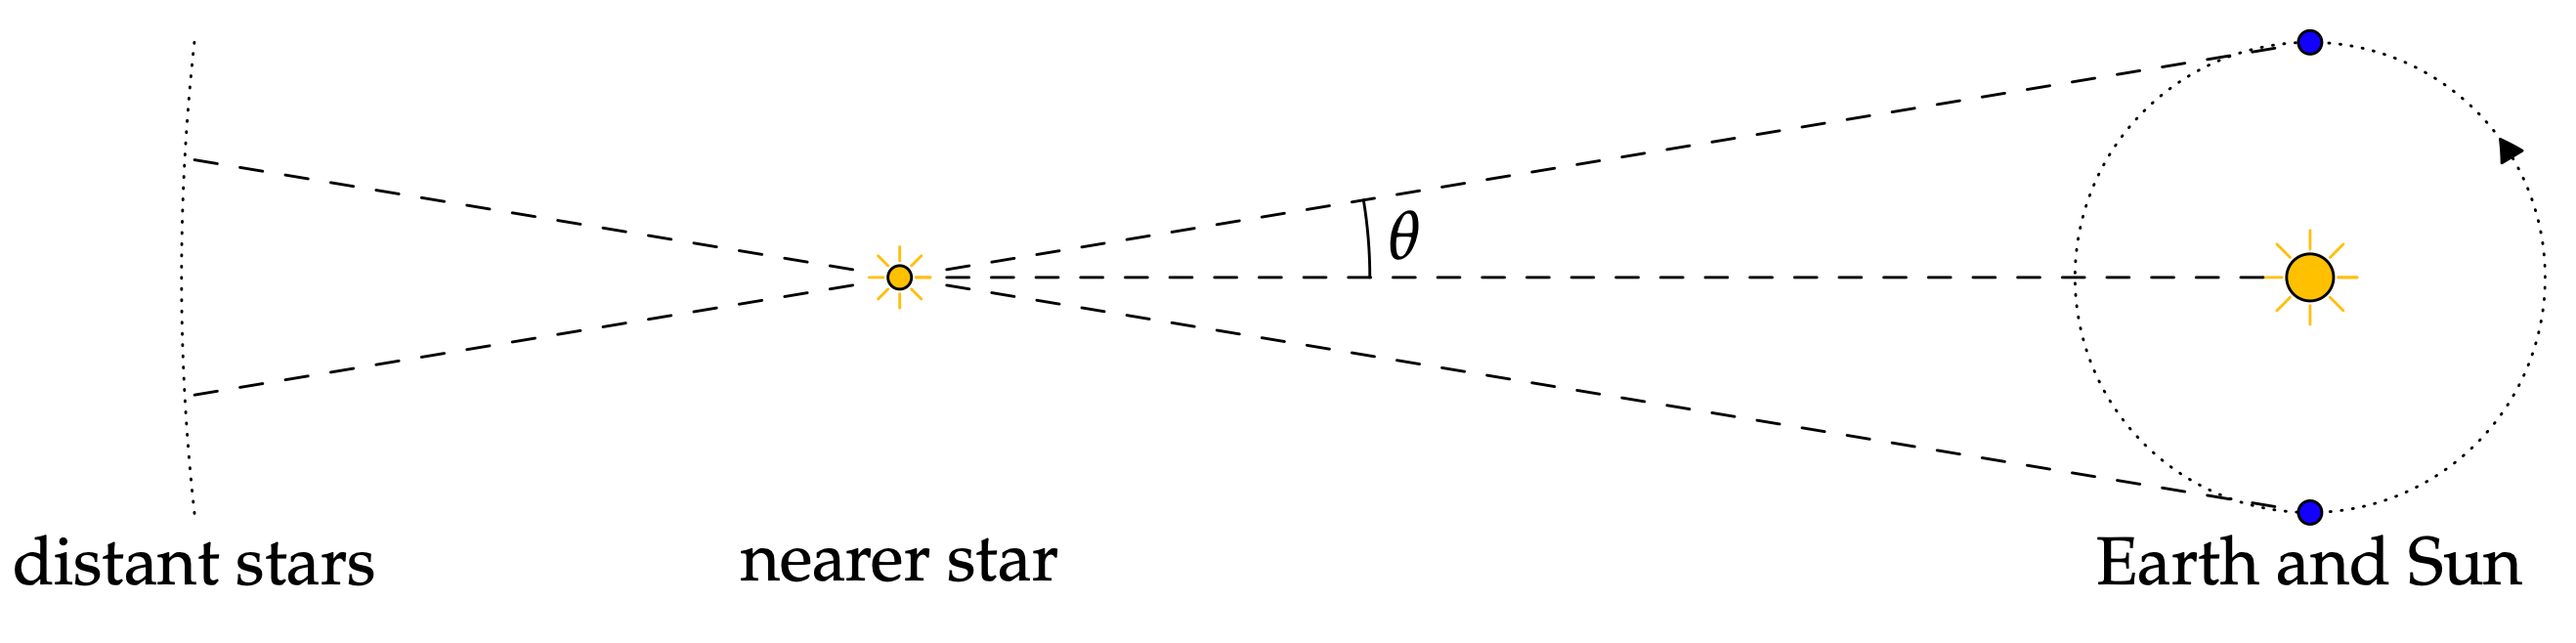 esempio di astronomia - immagine di www.math.uci.edu